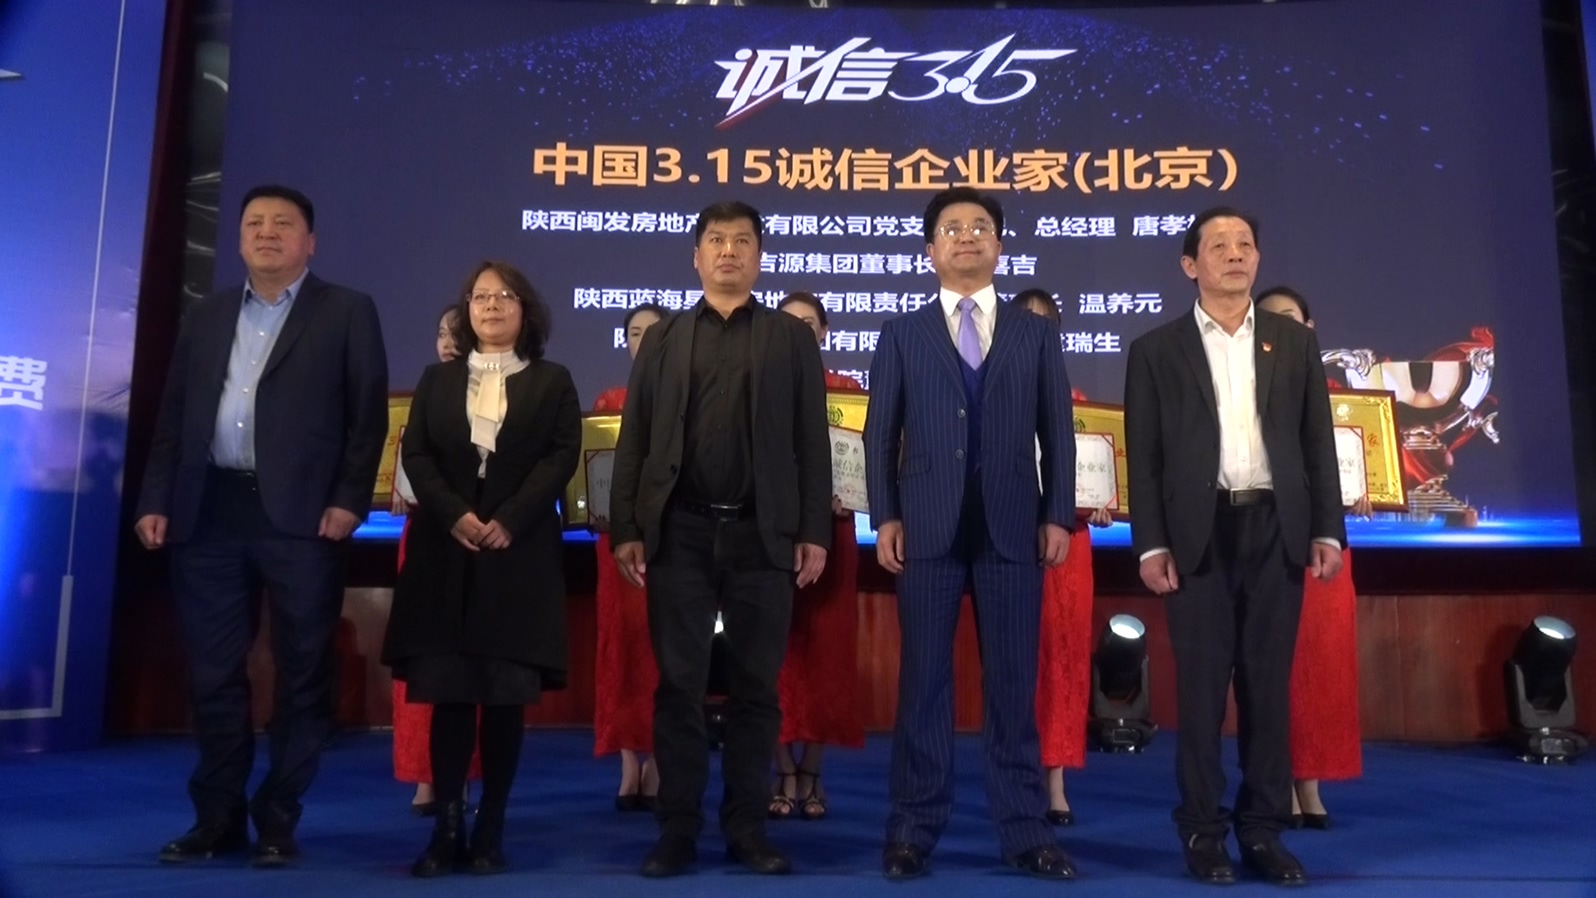 陕西服装工程学院董事长吕明荣获“中国3·15诚信企业家”称号